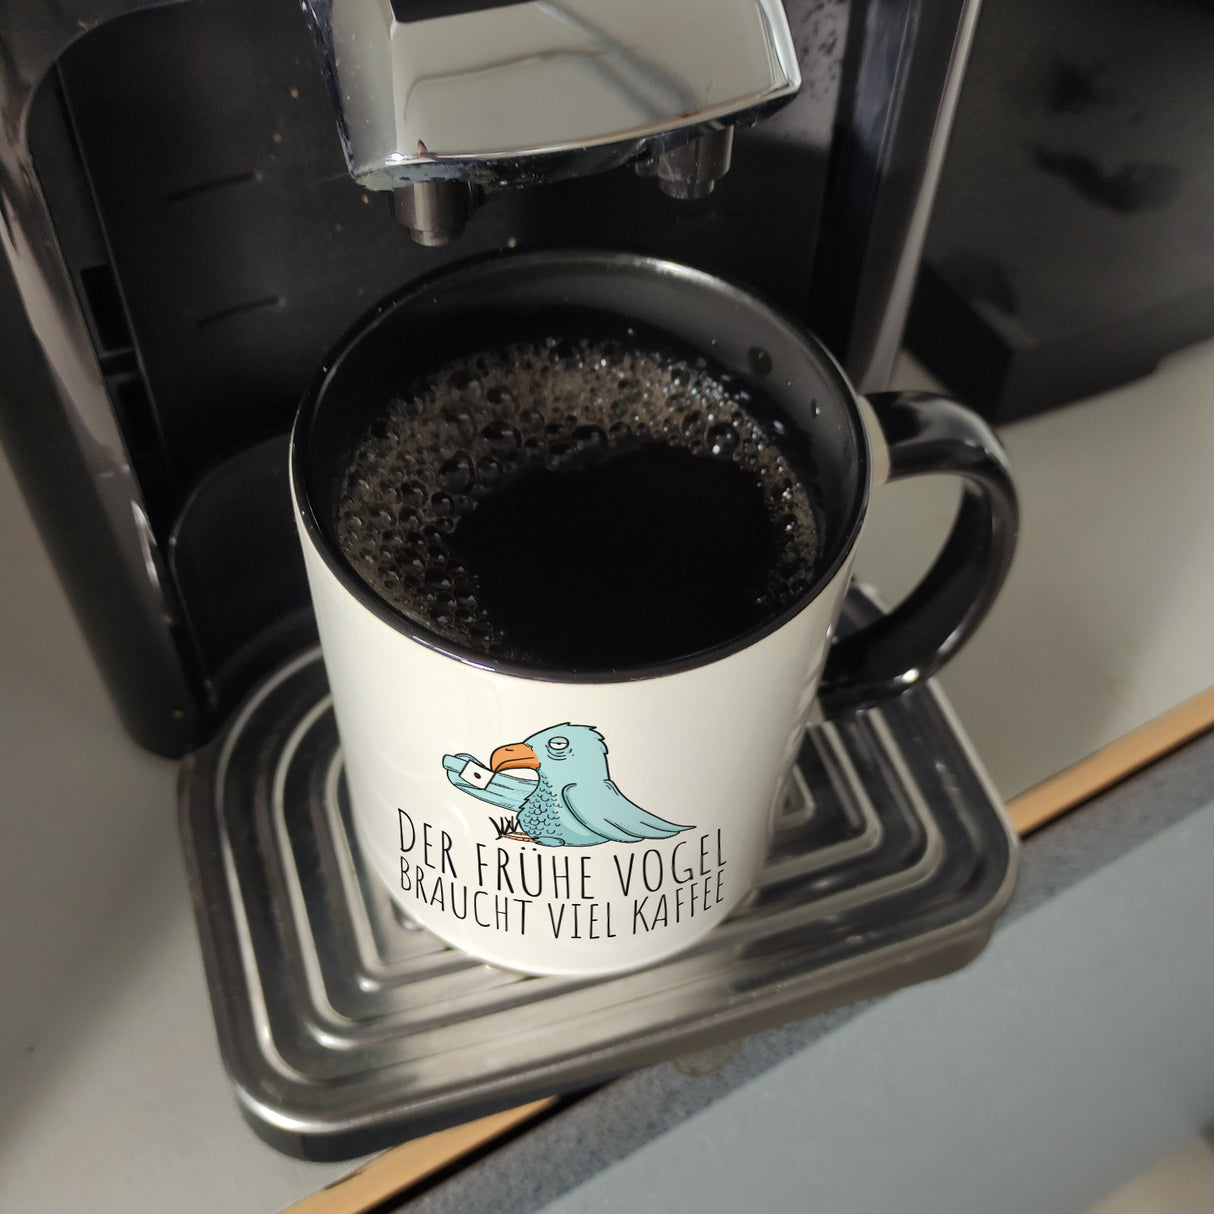 Der frühe Vogel braucht viel Kaffee Kaffeebecher